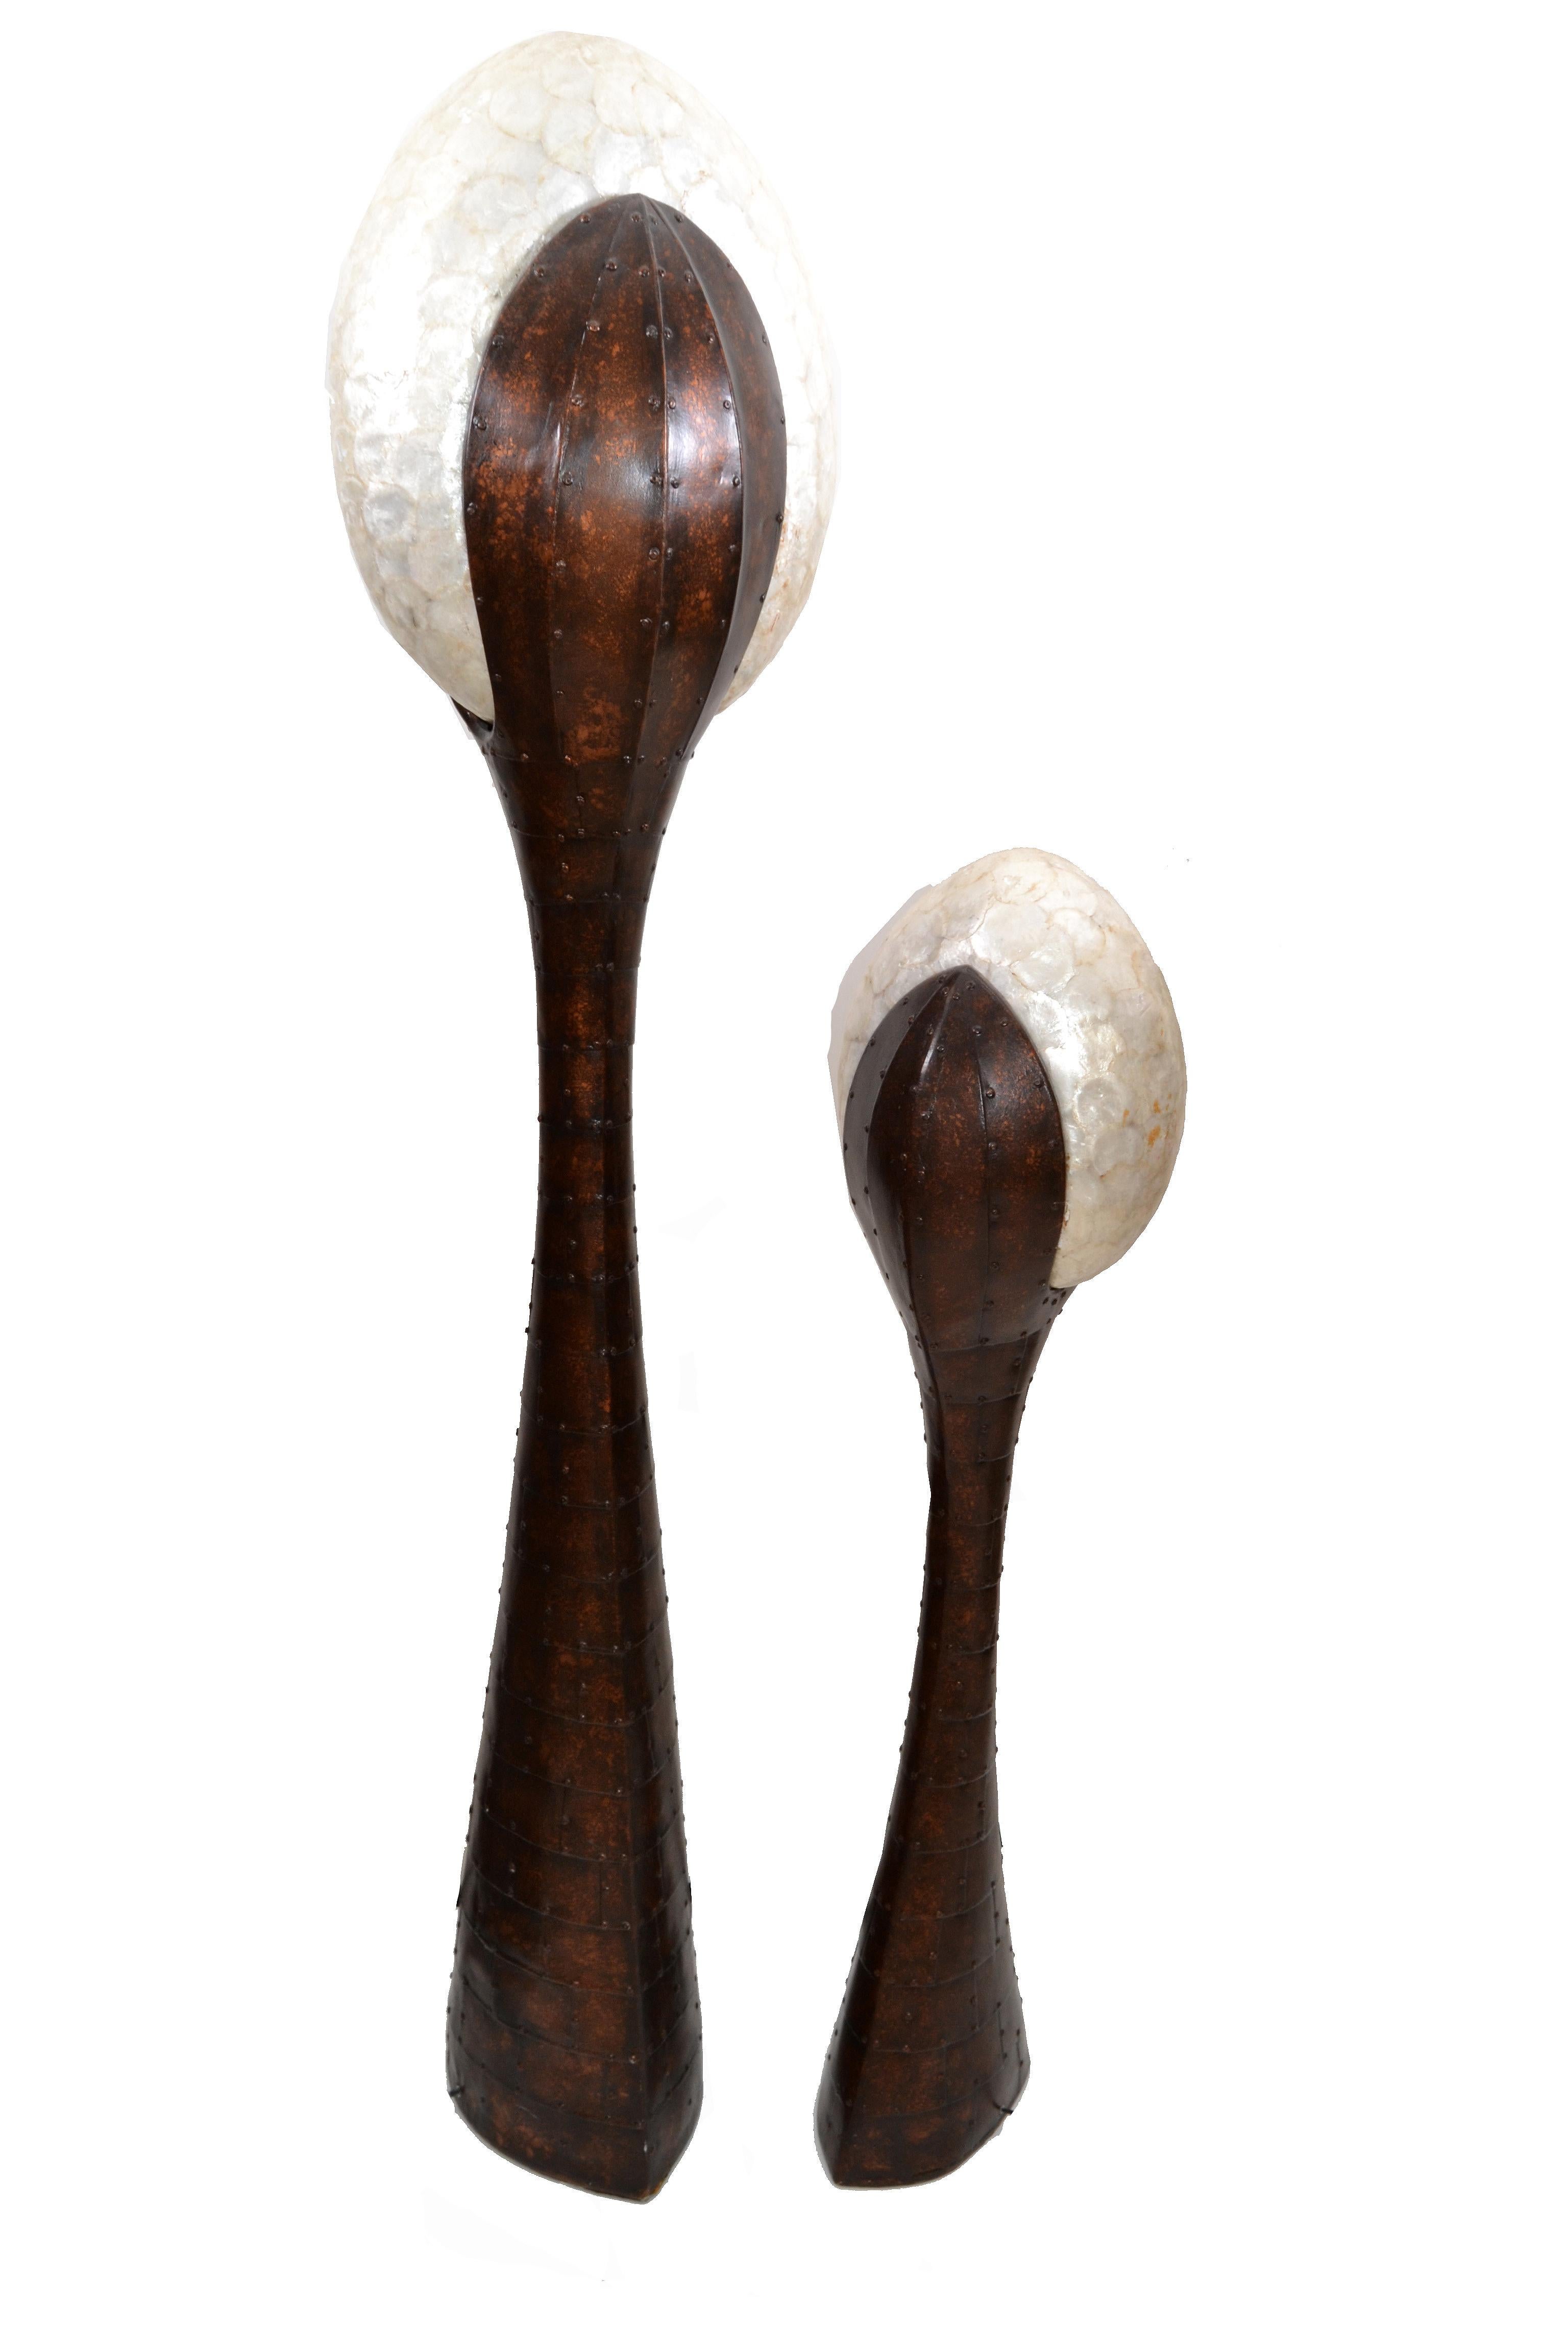 Mid-Century Modern Paar skulpturale Fiberglas und Perlmutt Muschel Stehlampen mit Kupfer Laminat und Nieten Dekor.
In perfektem Betriebszustand.
Jeder hat einen Fußschalter.
Die Taller-Lampe hat ein Label um das Kabel.
Kleine Stehlampe